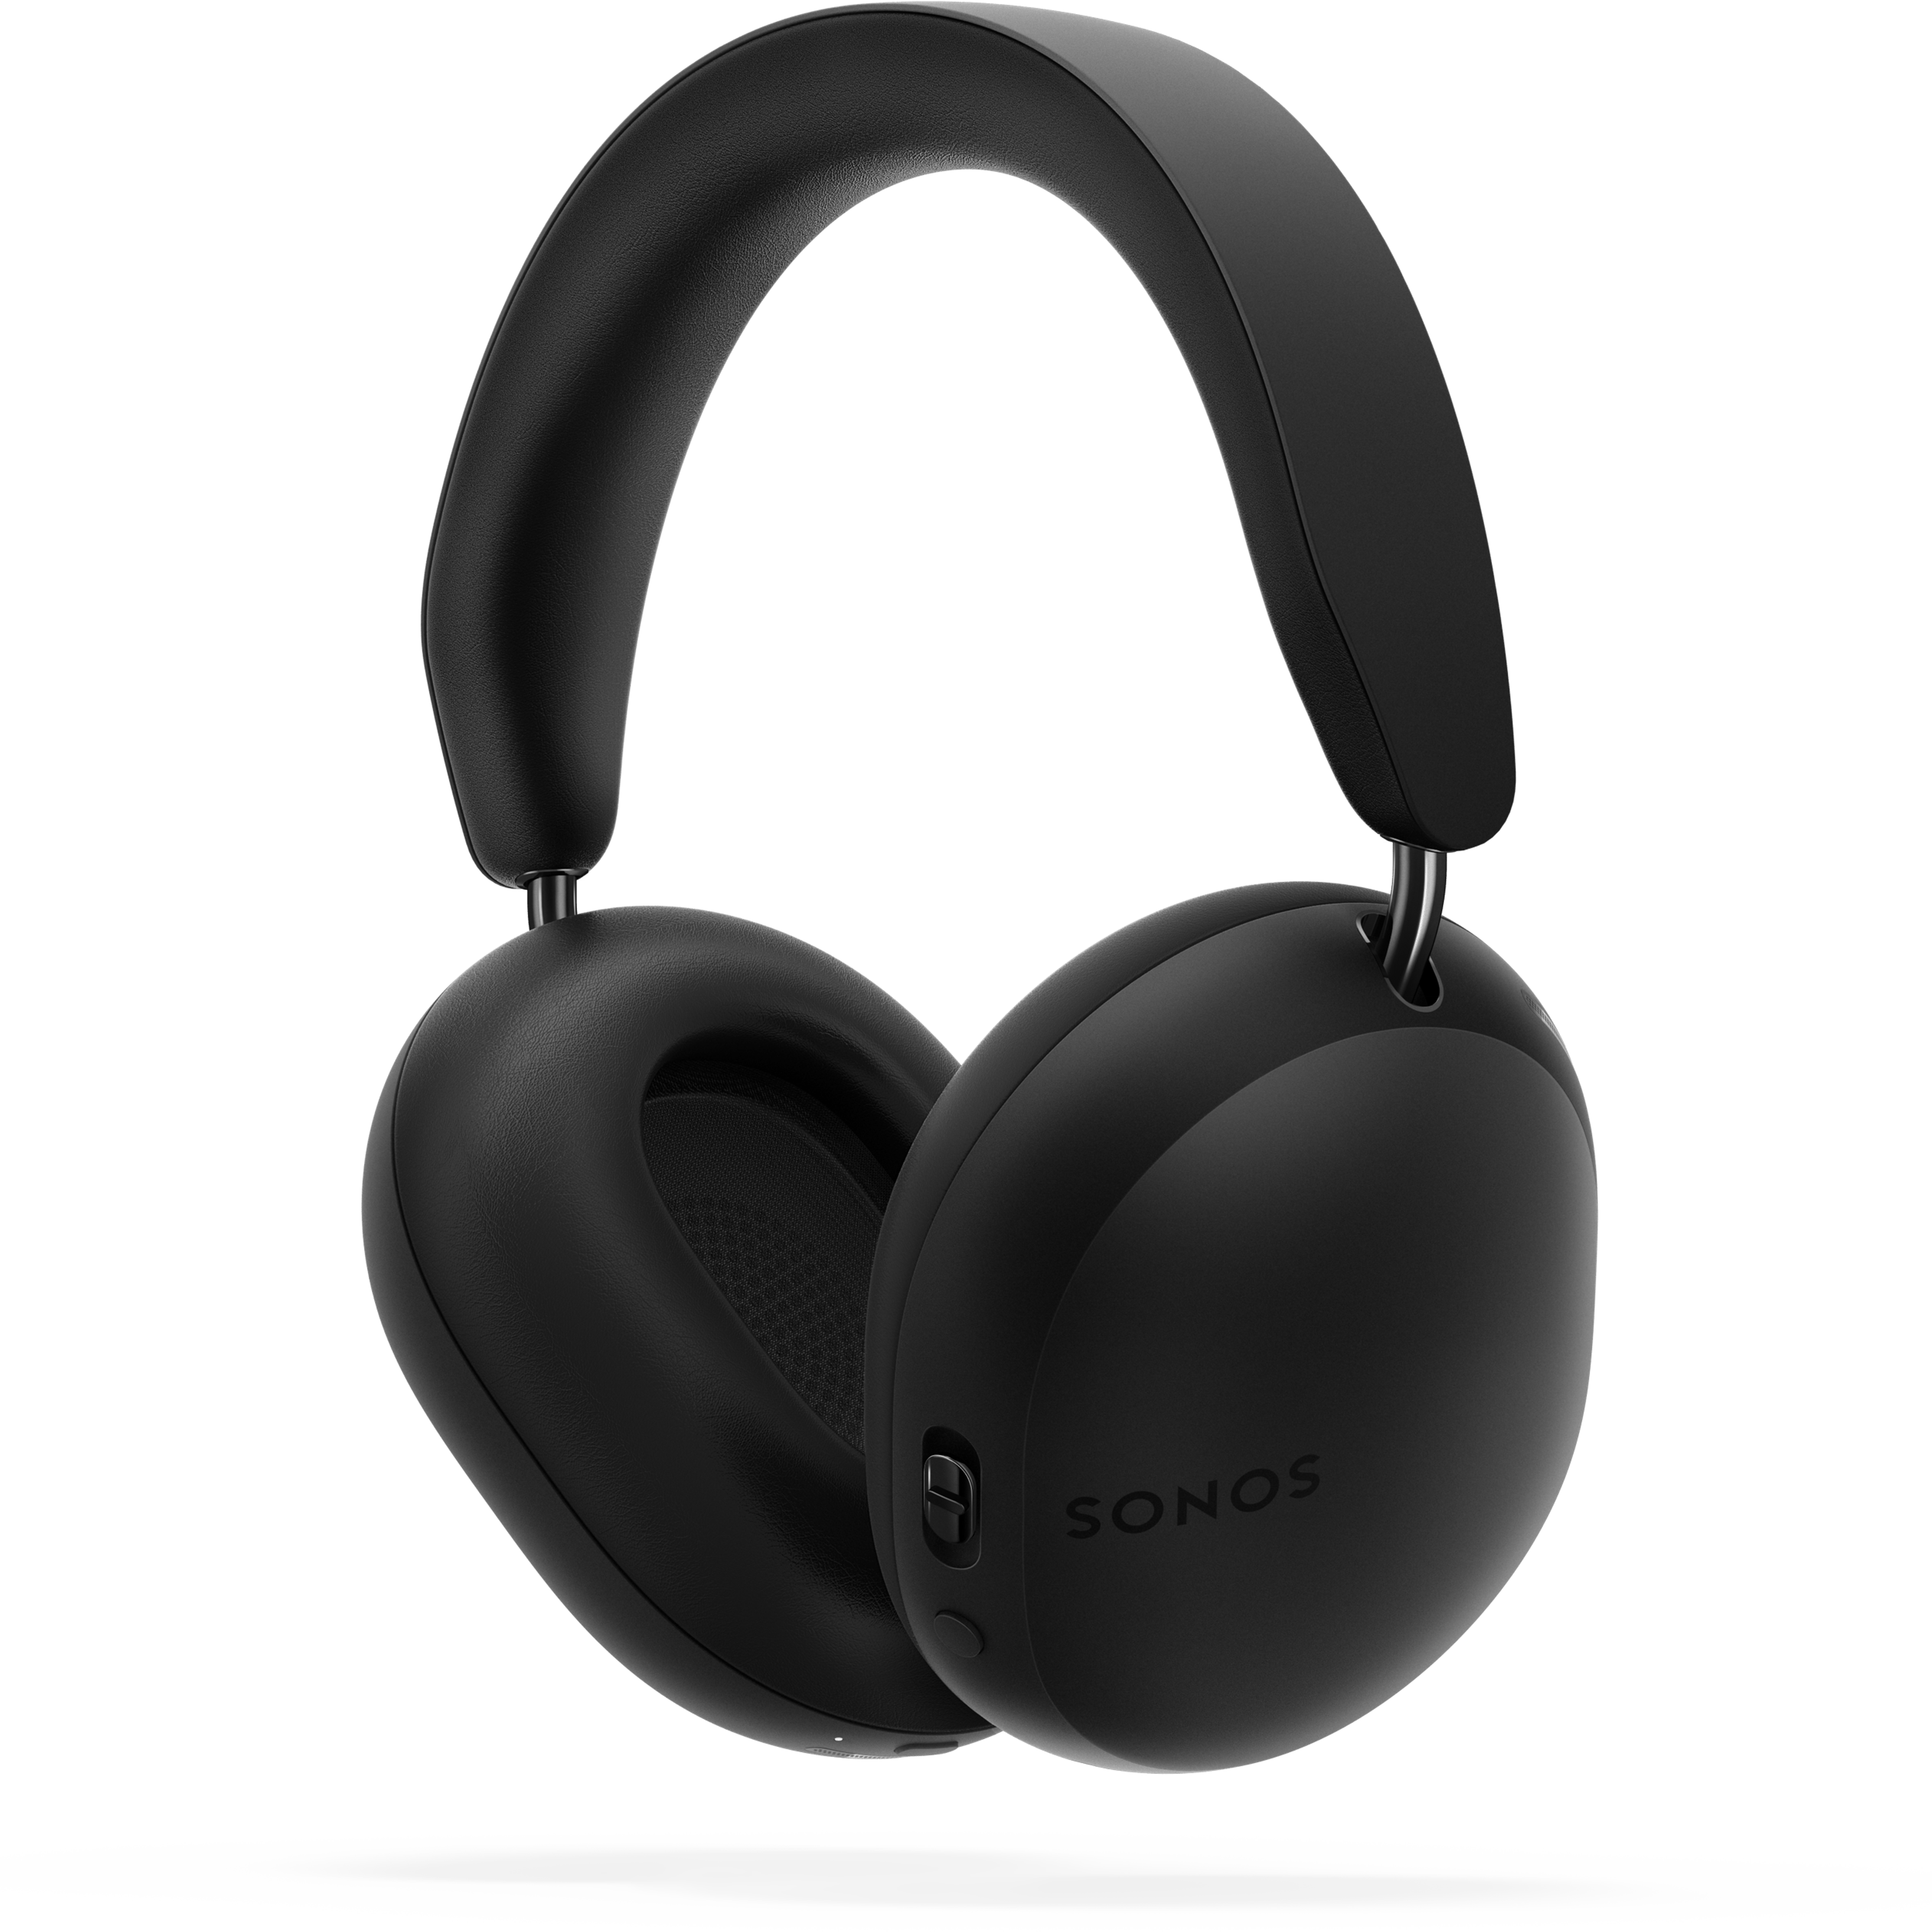 Sonos Ace-hovedtelefoner i sort, 45-graders vinkel bagfra, over skygge